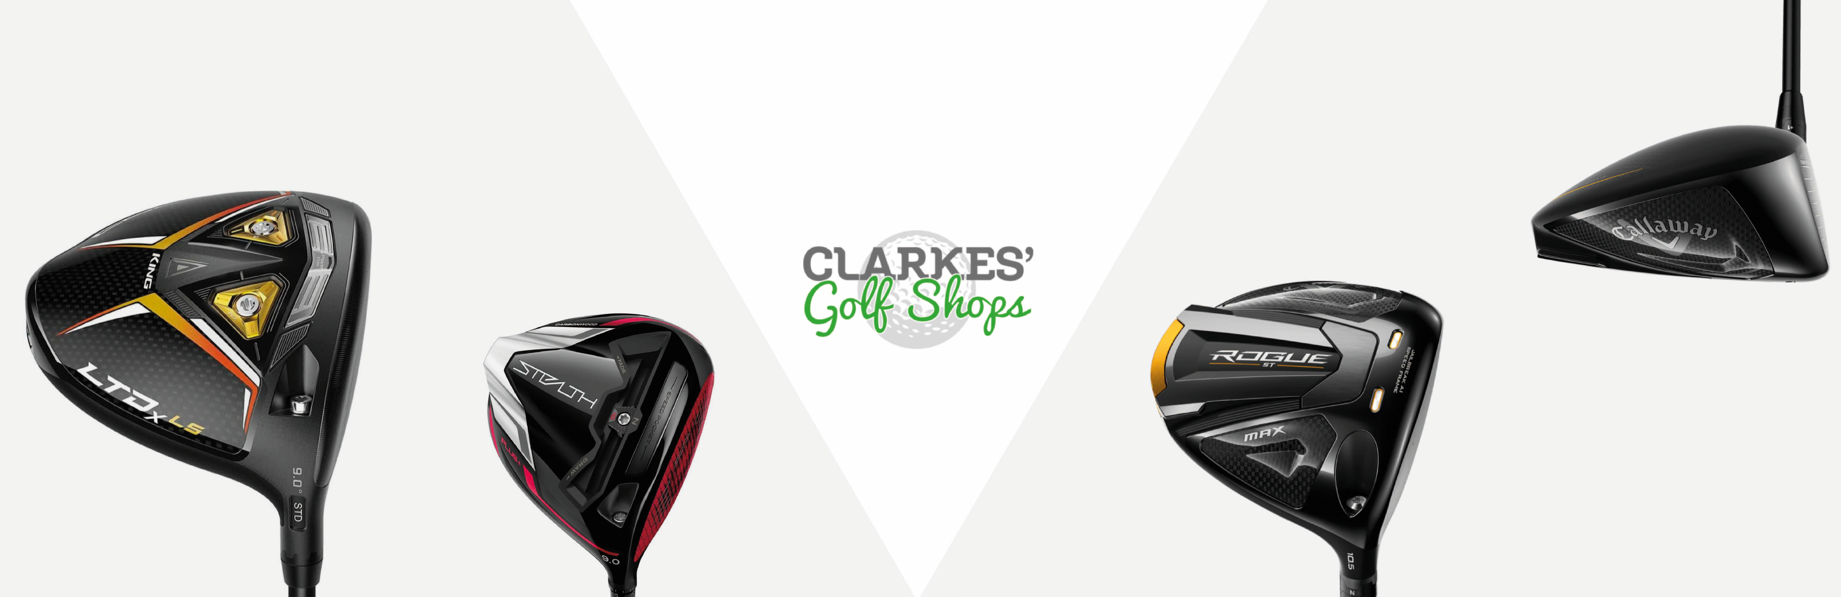 Best Golf Driver For Seniors - Clarkes Golf